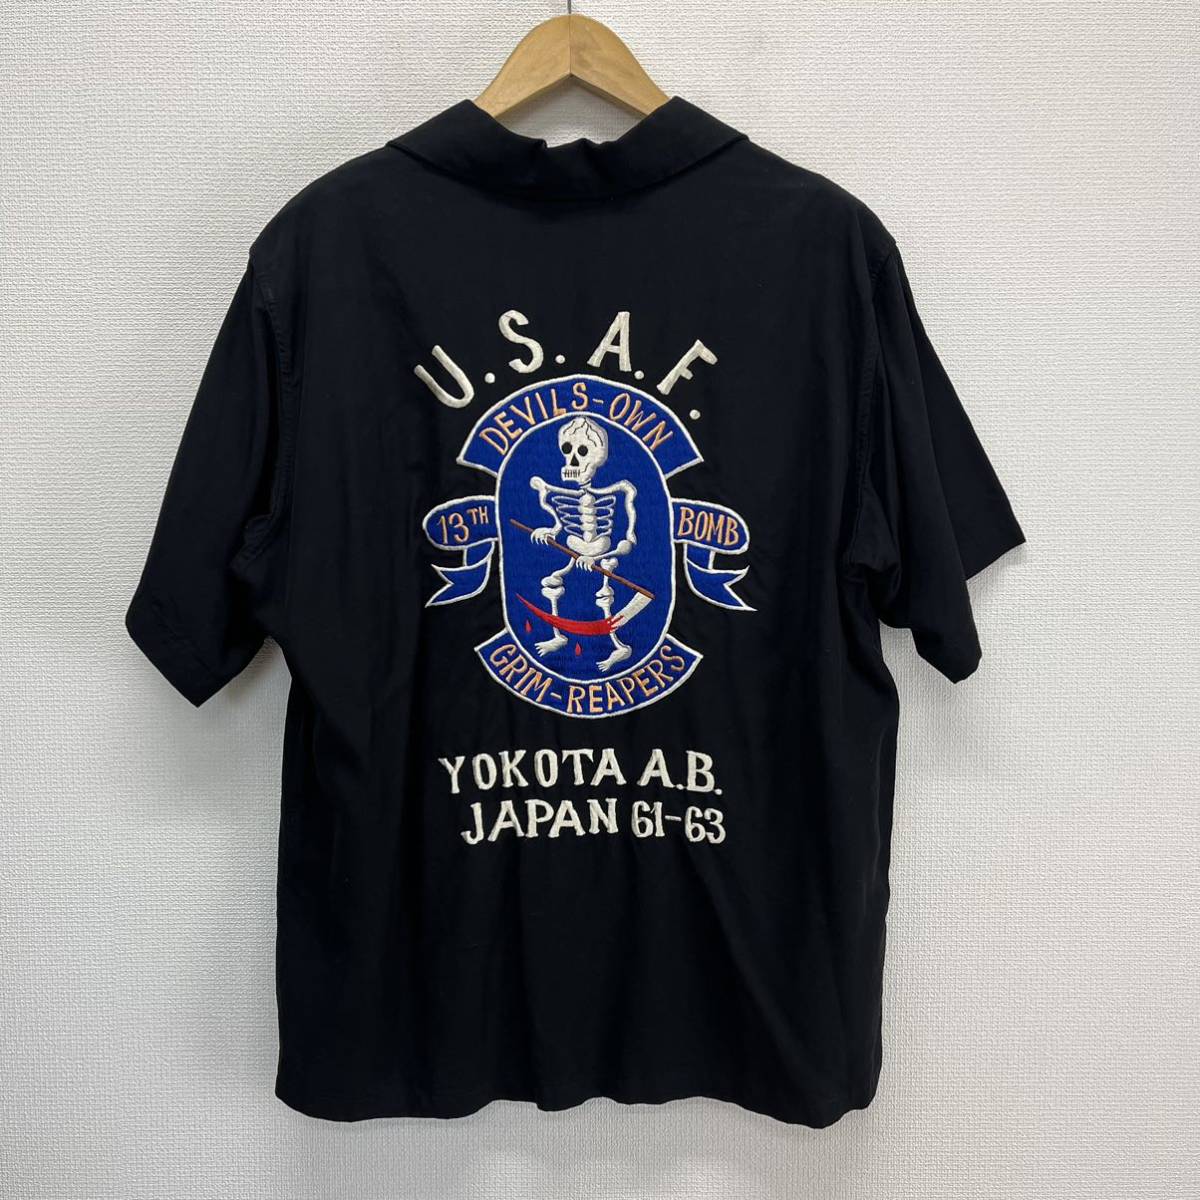 TOYO ENTERPRISE 東洋エンタープライズ TT34655 スカシャツ U.S.A.F. YOKOTA 米軍横田基地 レーヨン 刺繍 M 10112376_画像1